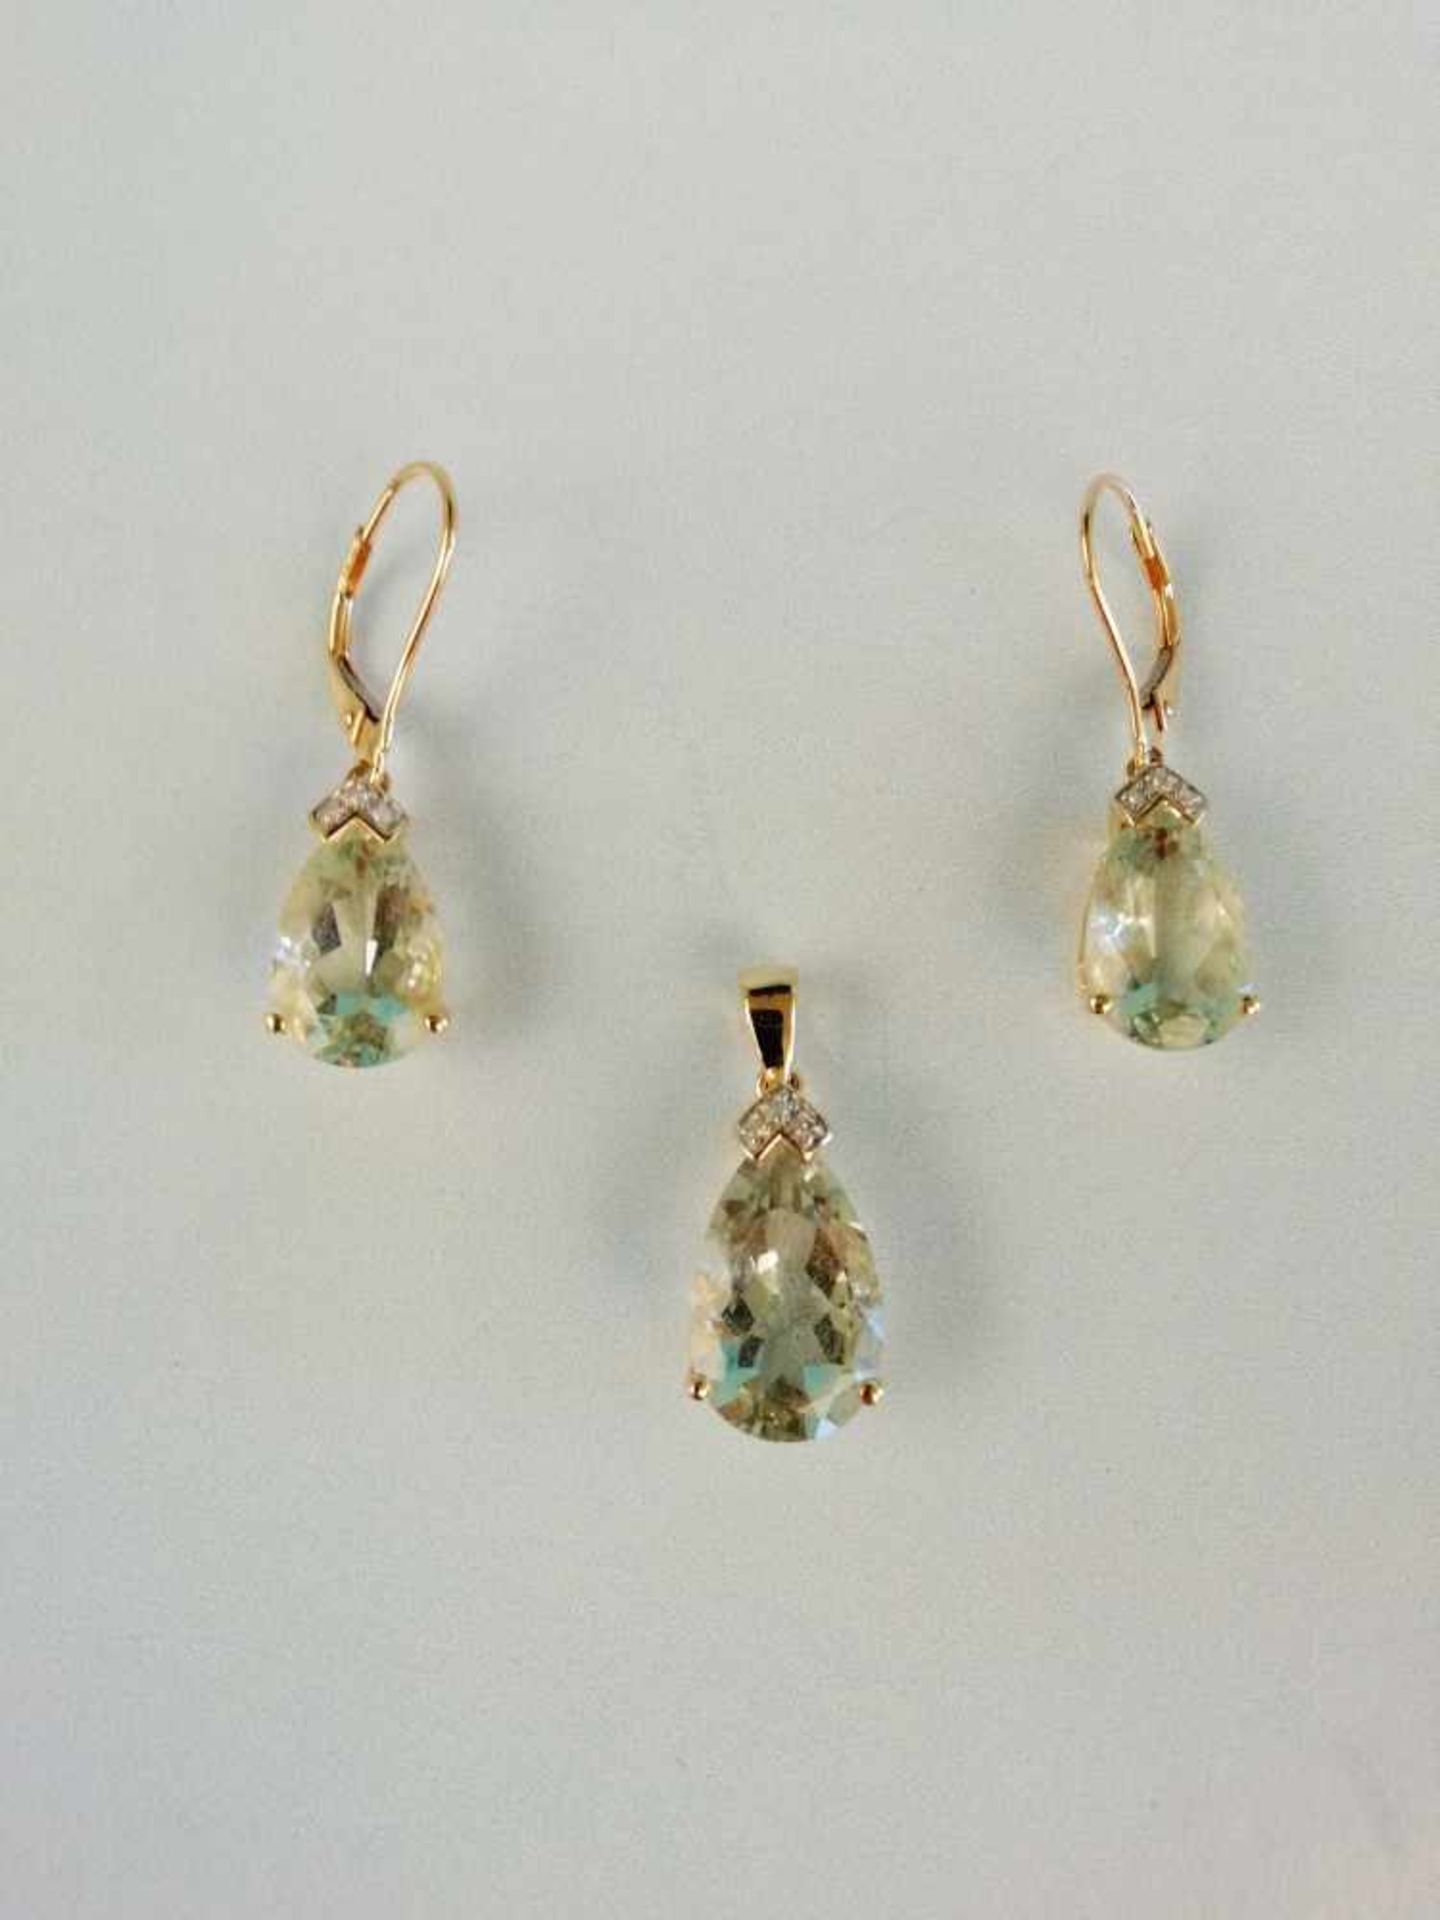 Damenschmuckgarnitur Gold 585 mit Diamanten und Beryll, bestehend aus:1 Paar Ohrringe und 1